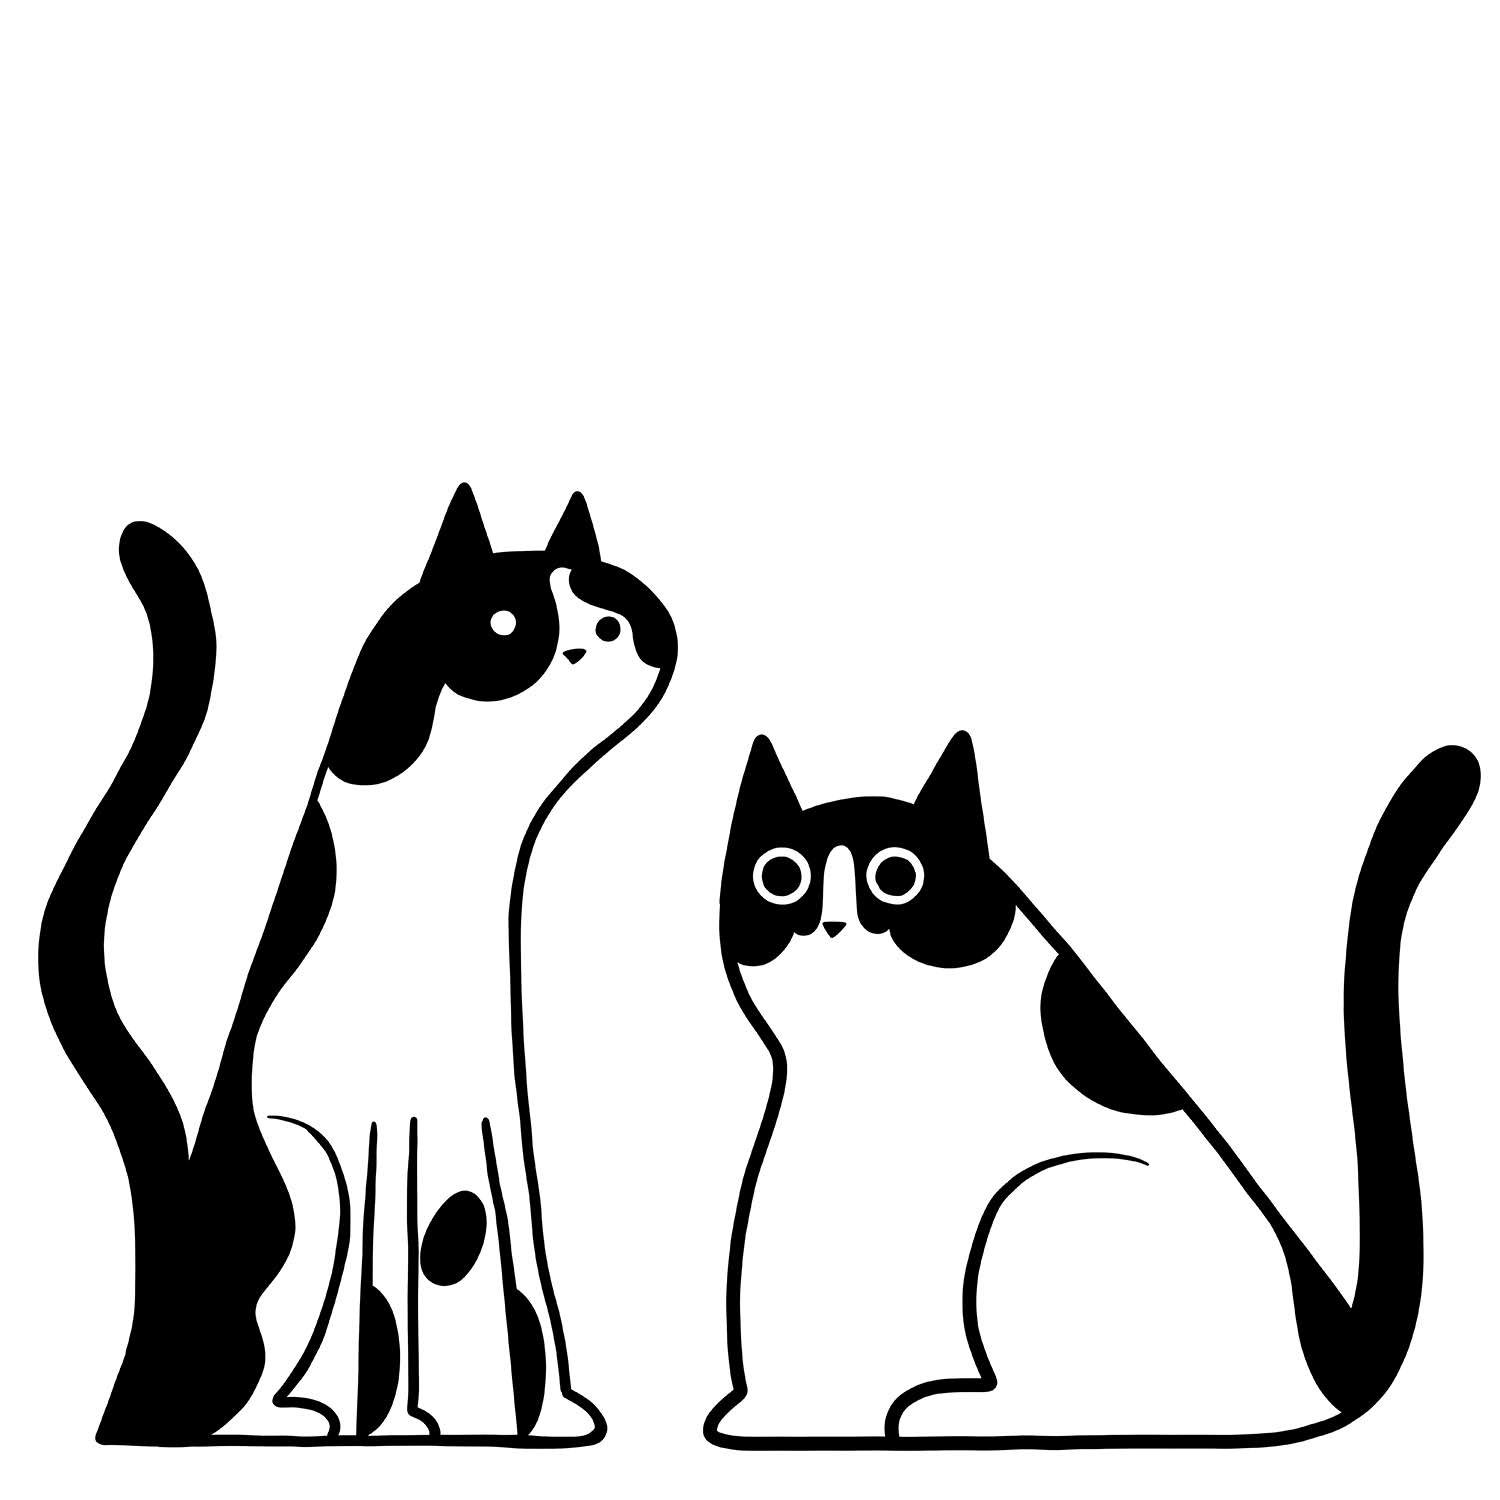 2cats_Logo.jpg